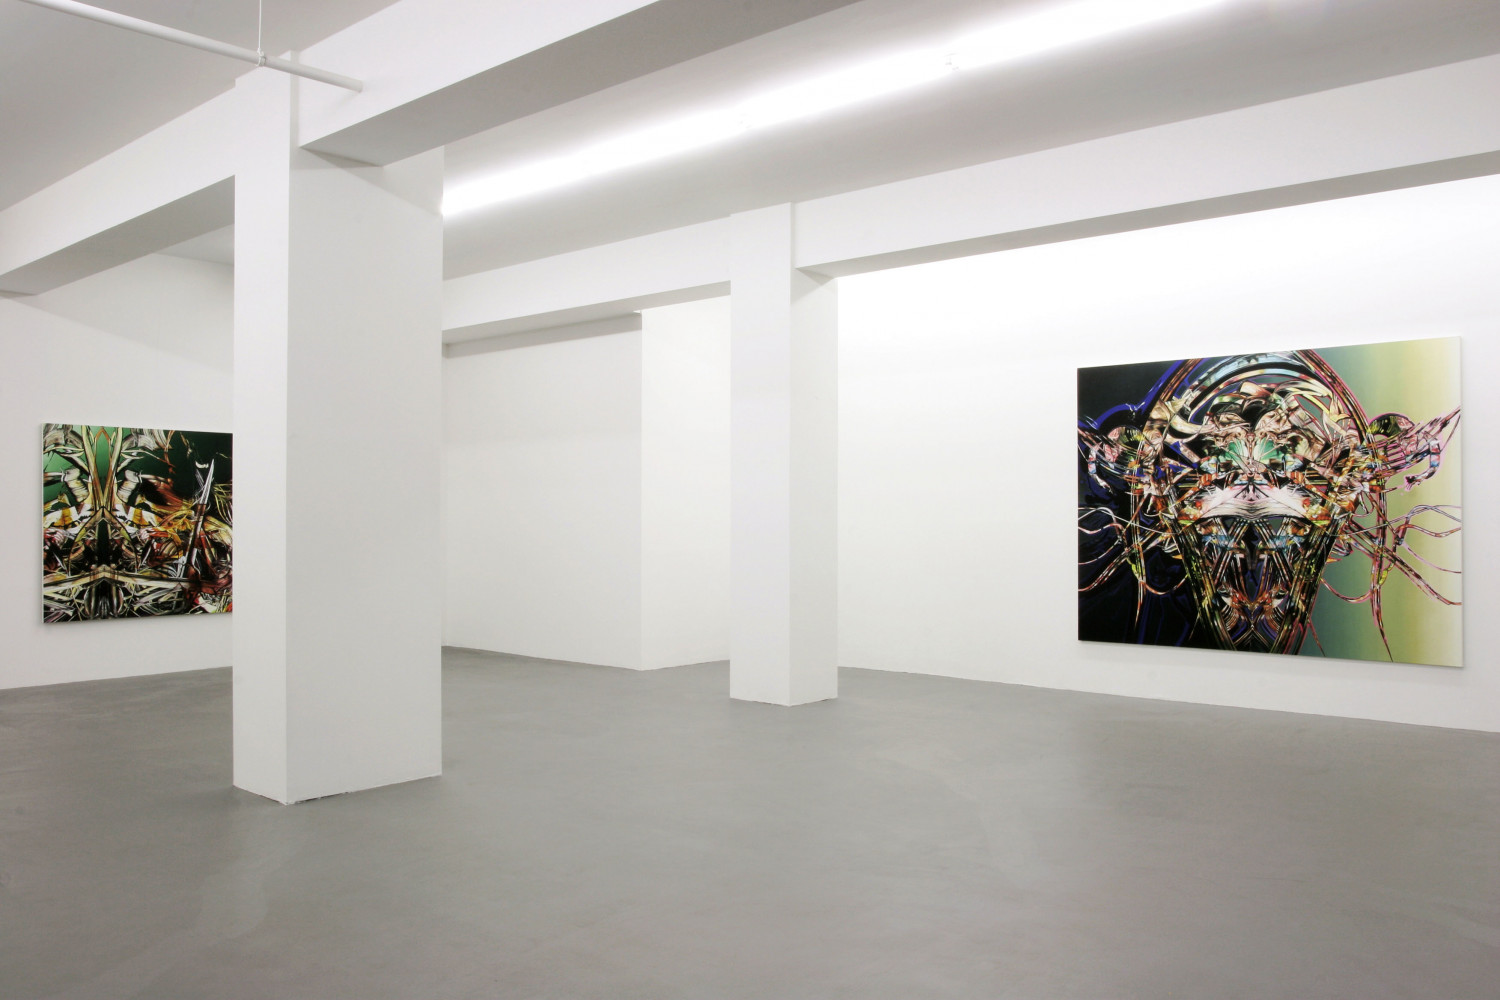 Sean Dawson, ‘Silent Glitch ’, Installation view, Buchmann Galerie, 2005